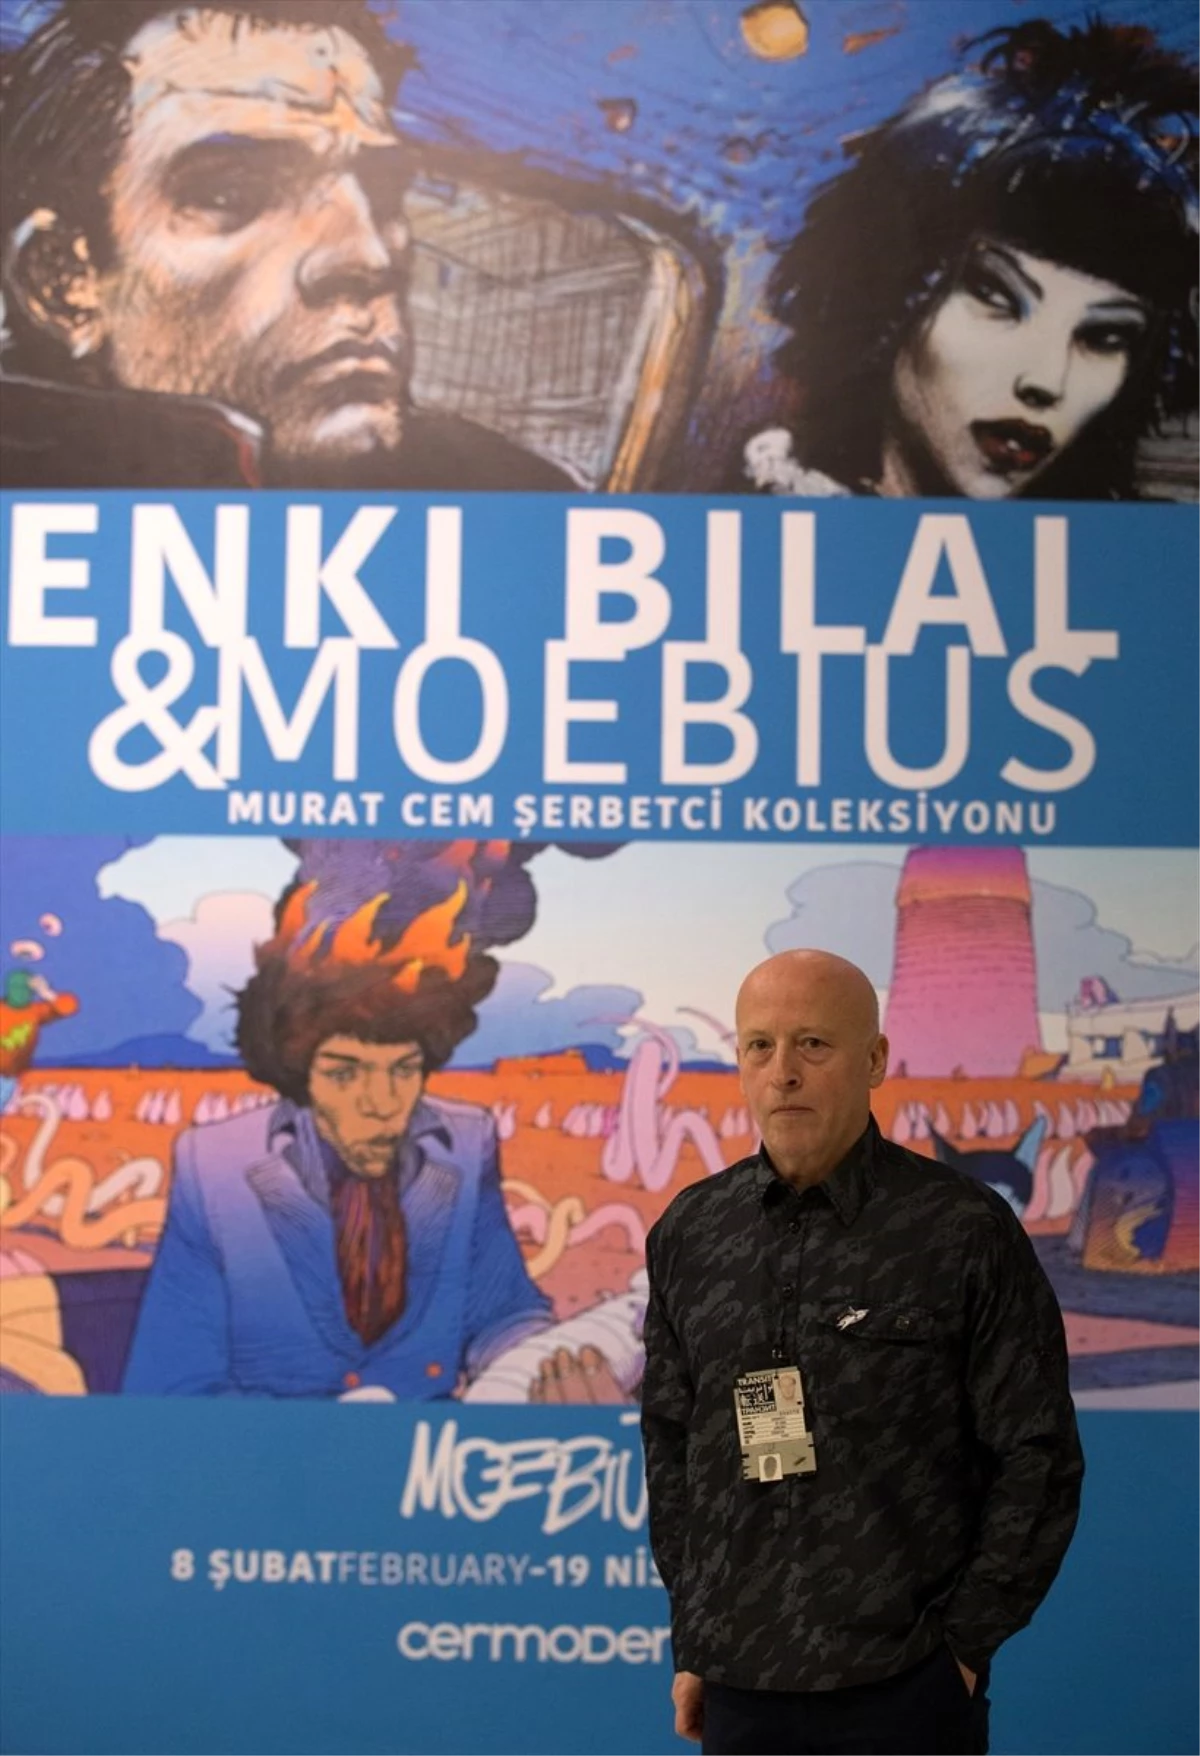 Fransız çizgi roman sanatçısı Moebius ile Enki Bilal\'in eserleri başkentte sergileniyor